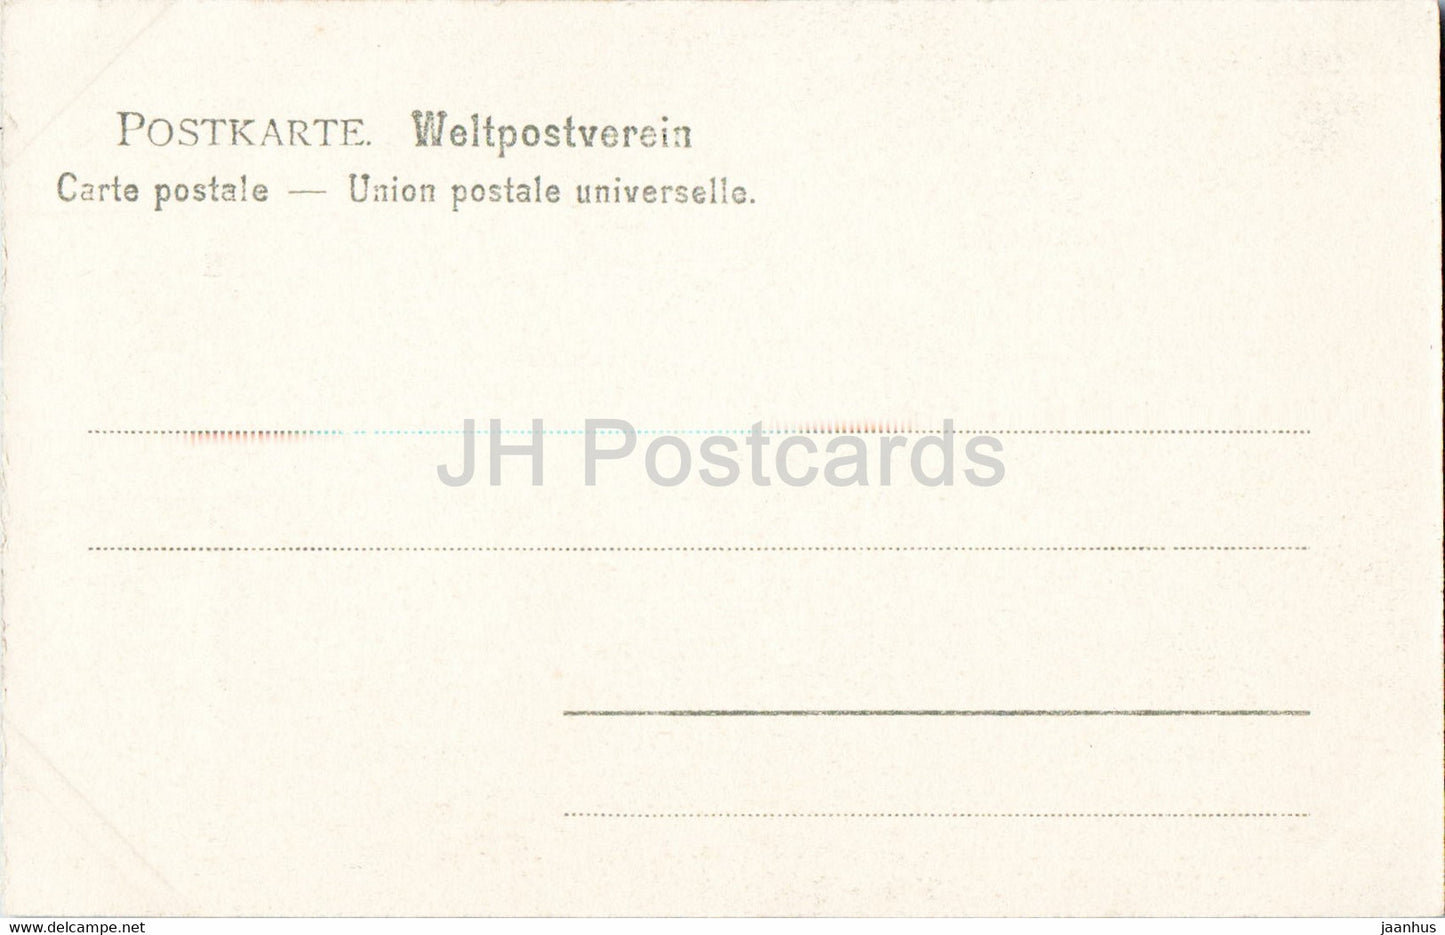 Barenstein - Schneiderloch - Sachs Schweiz - 778 - old postcard - Germany - unused